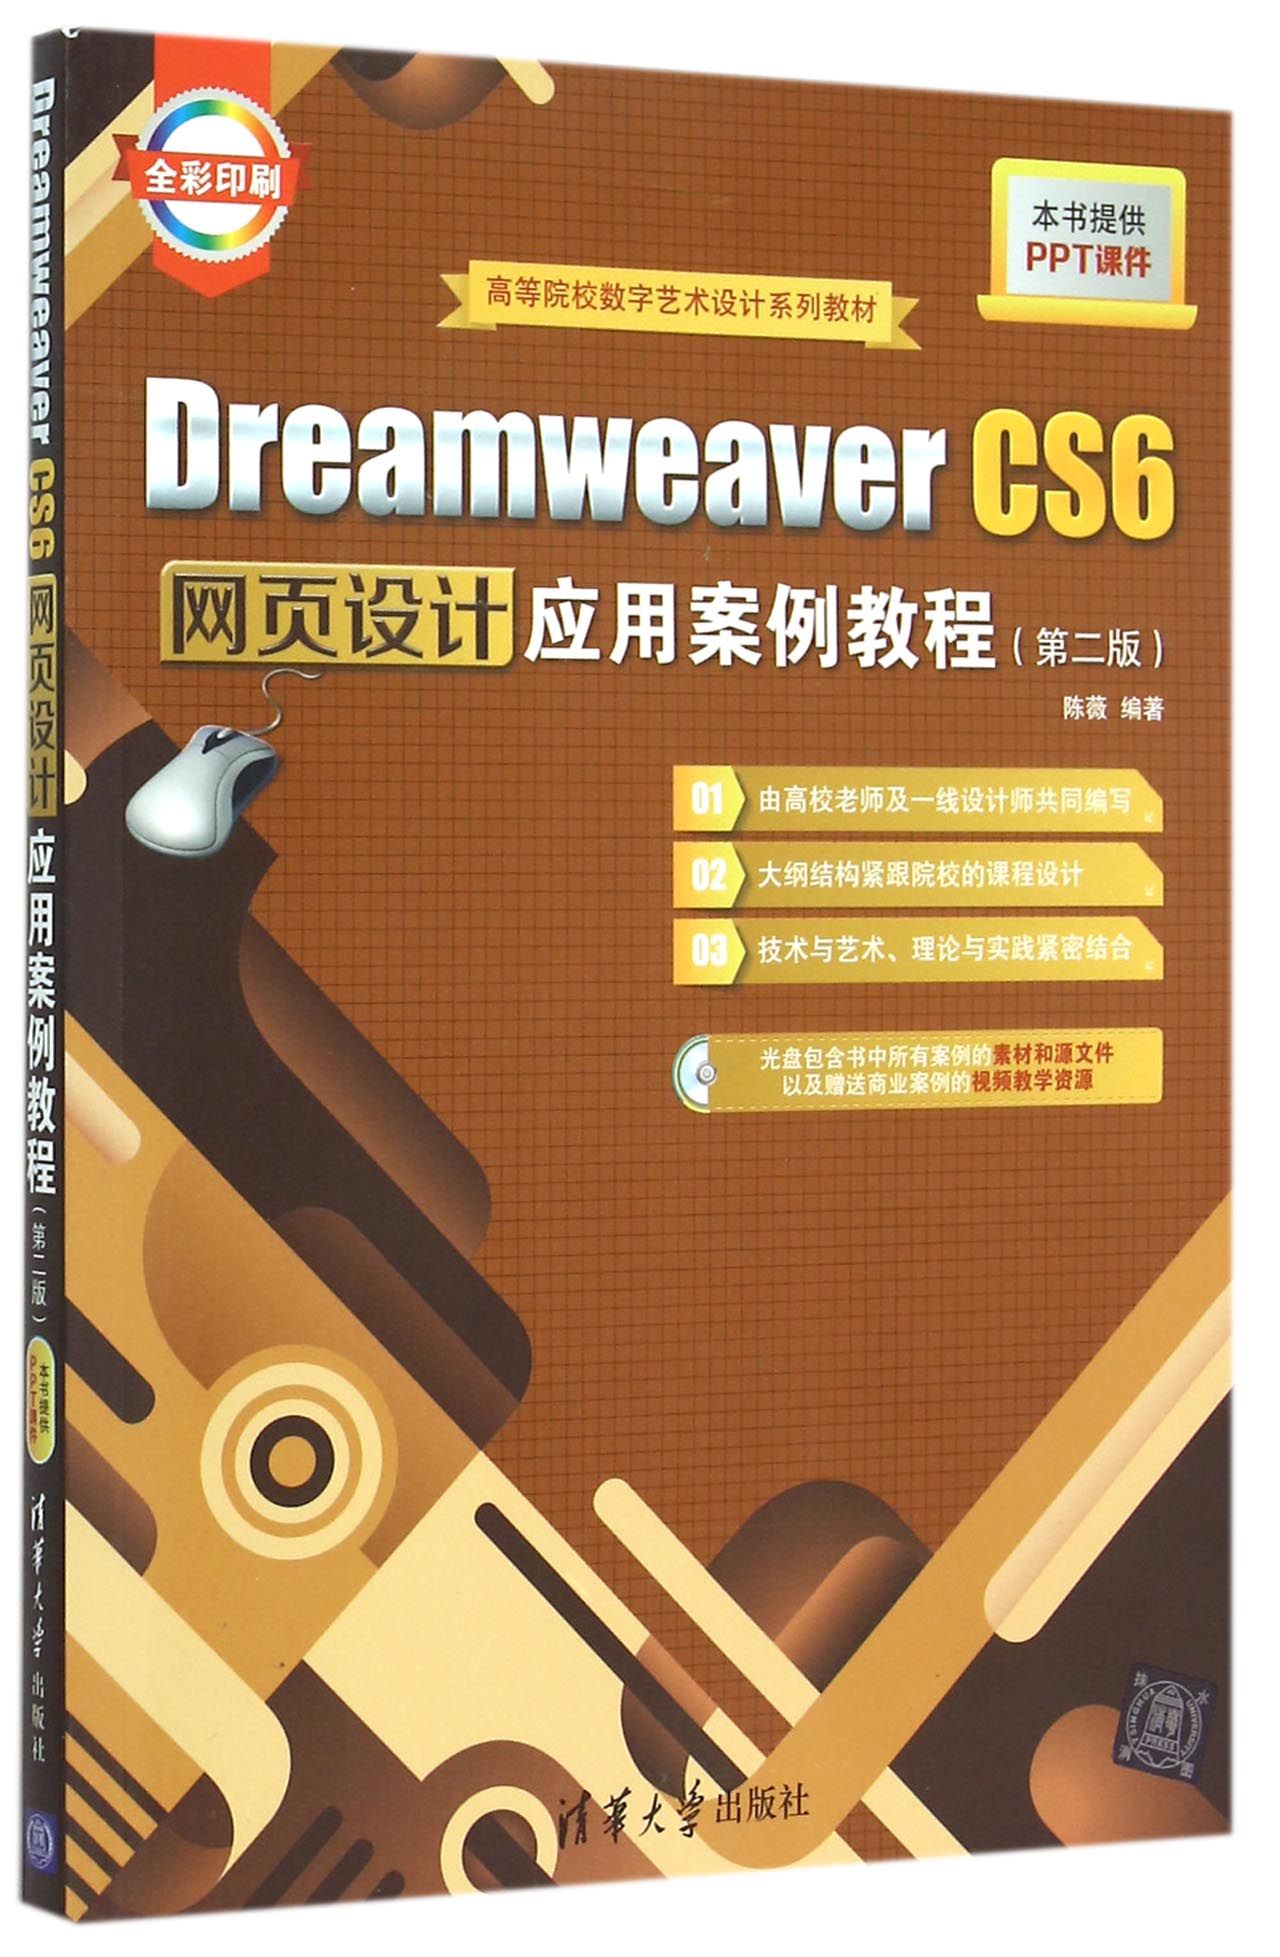 【官方正版】 Dreamweaver CS6网页设计应用案例教程 附光盘第2版全彩印刷 数字艺术设计系列教材 入门